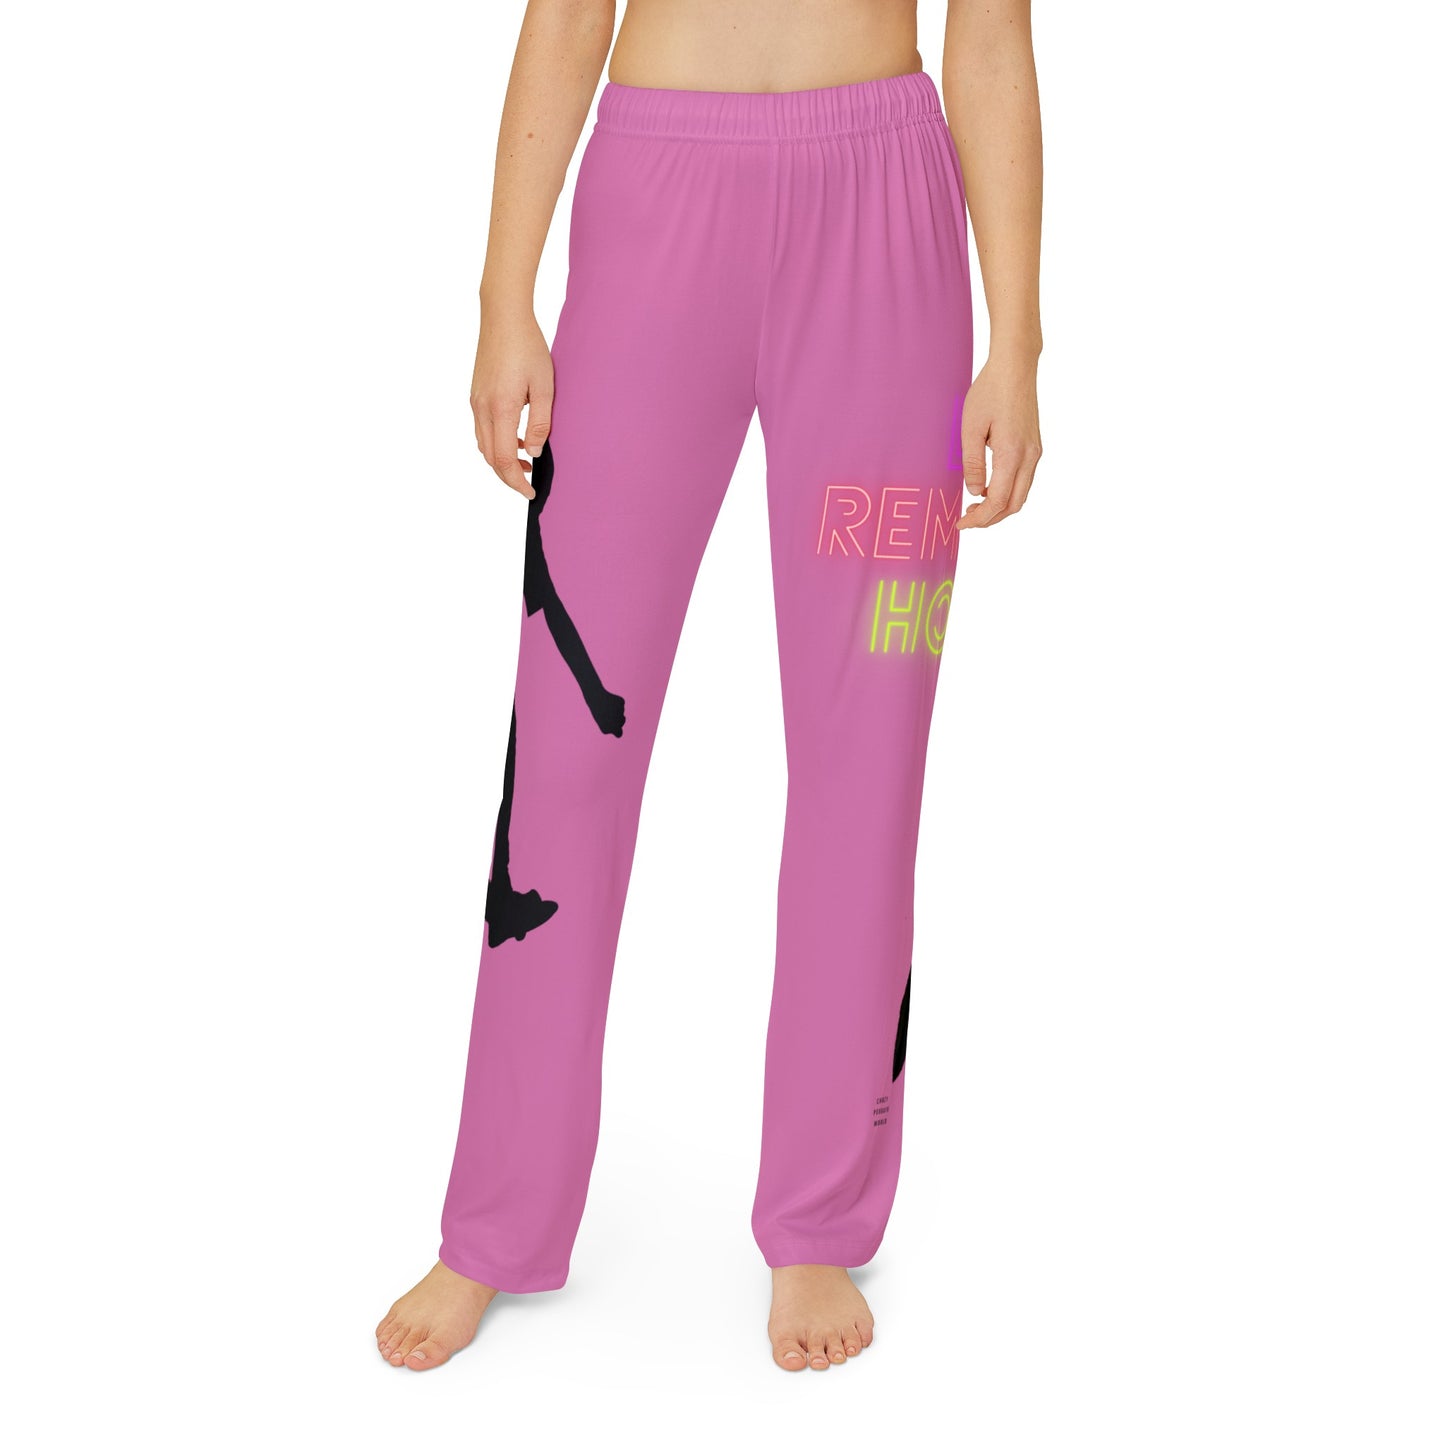 Kids Pajama Pants: Skateboarding Lite Pink